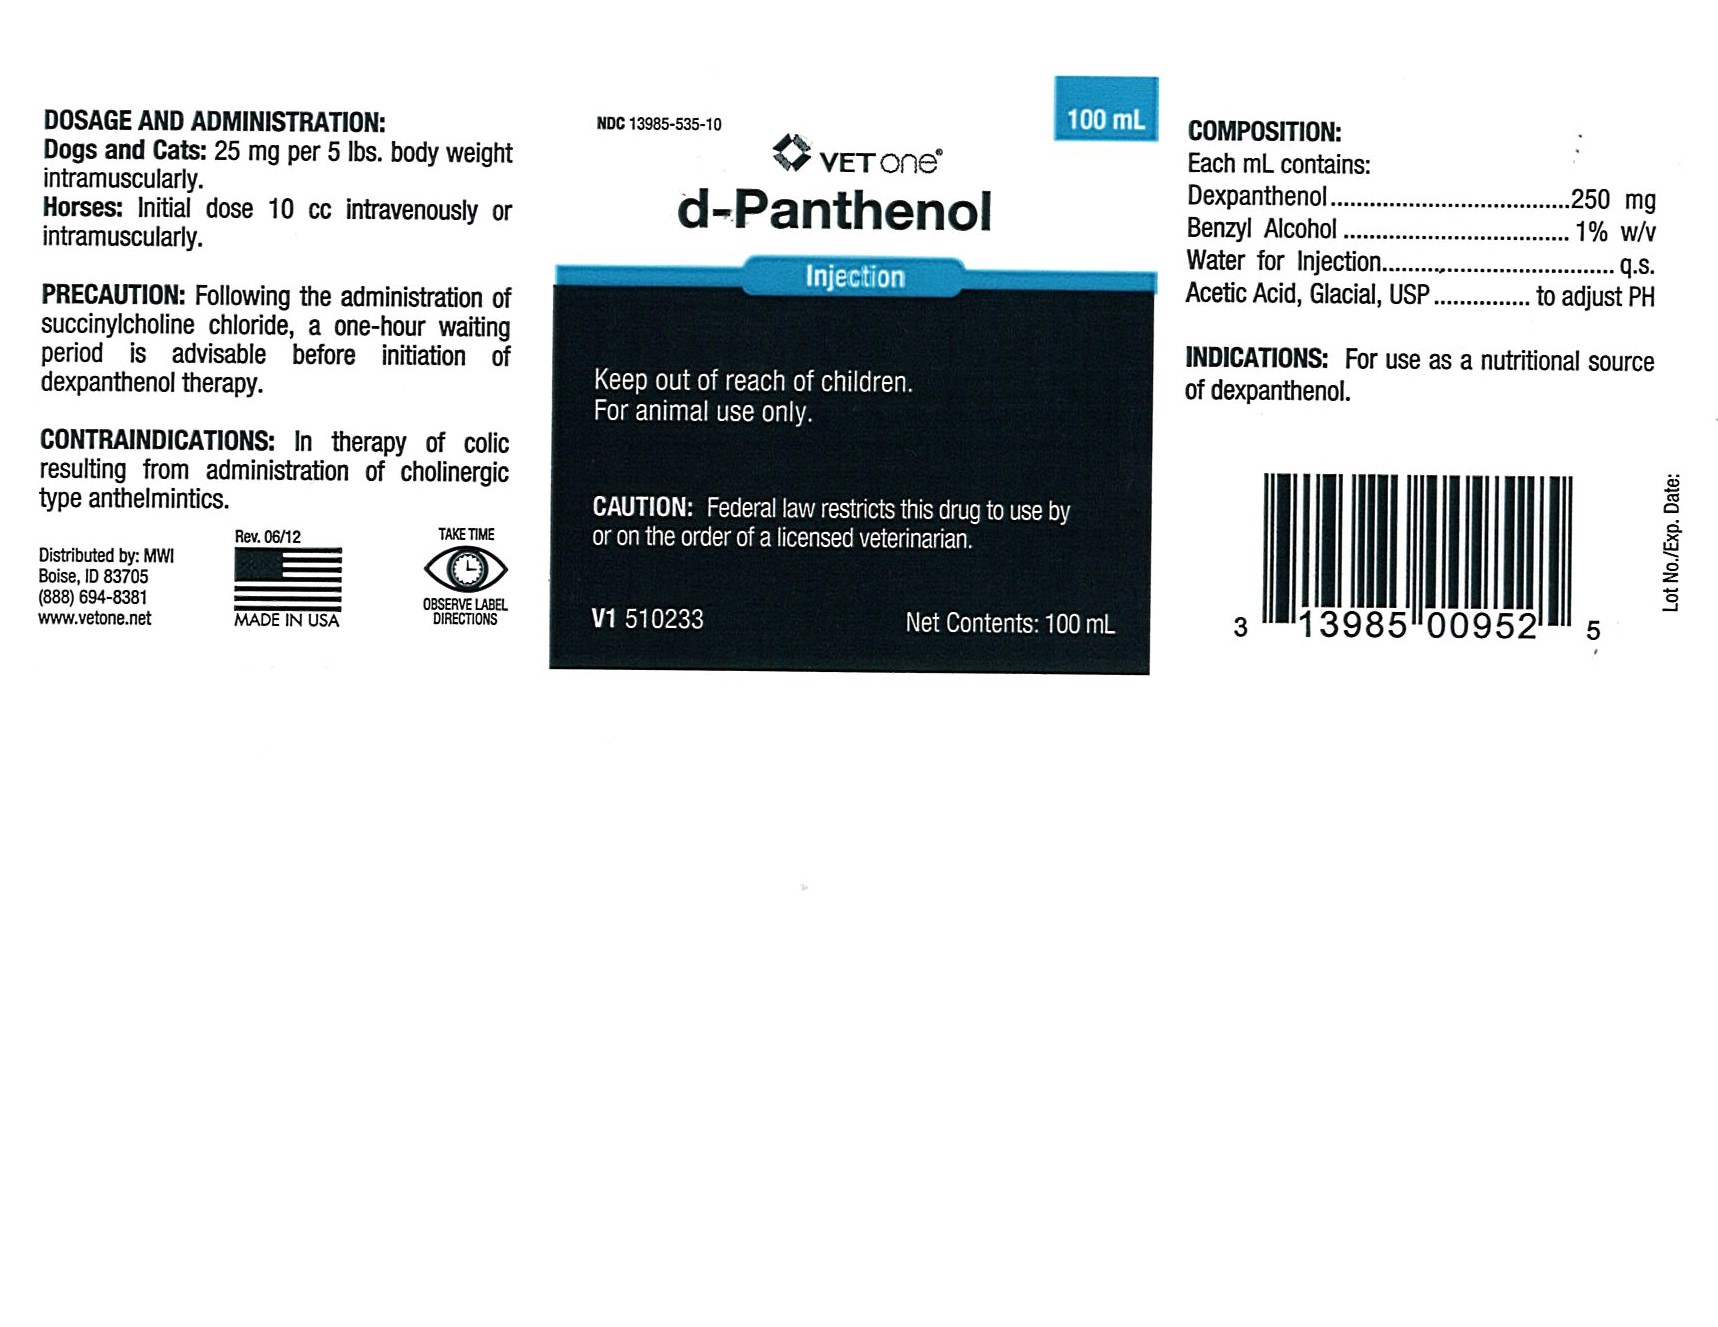 D-Panthenol Inj MWI label